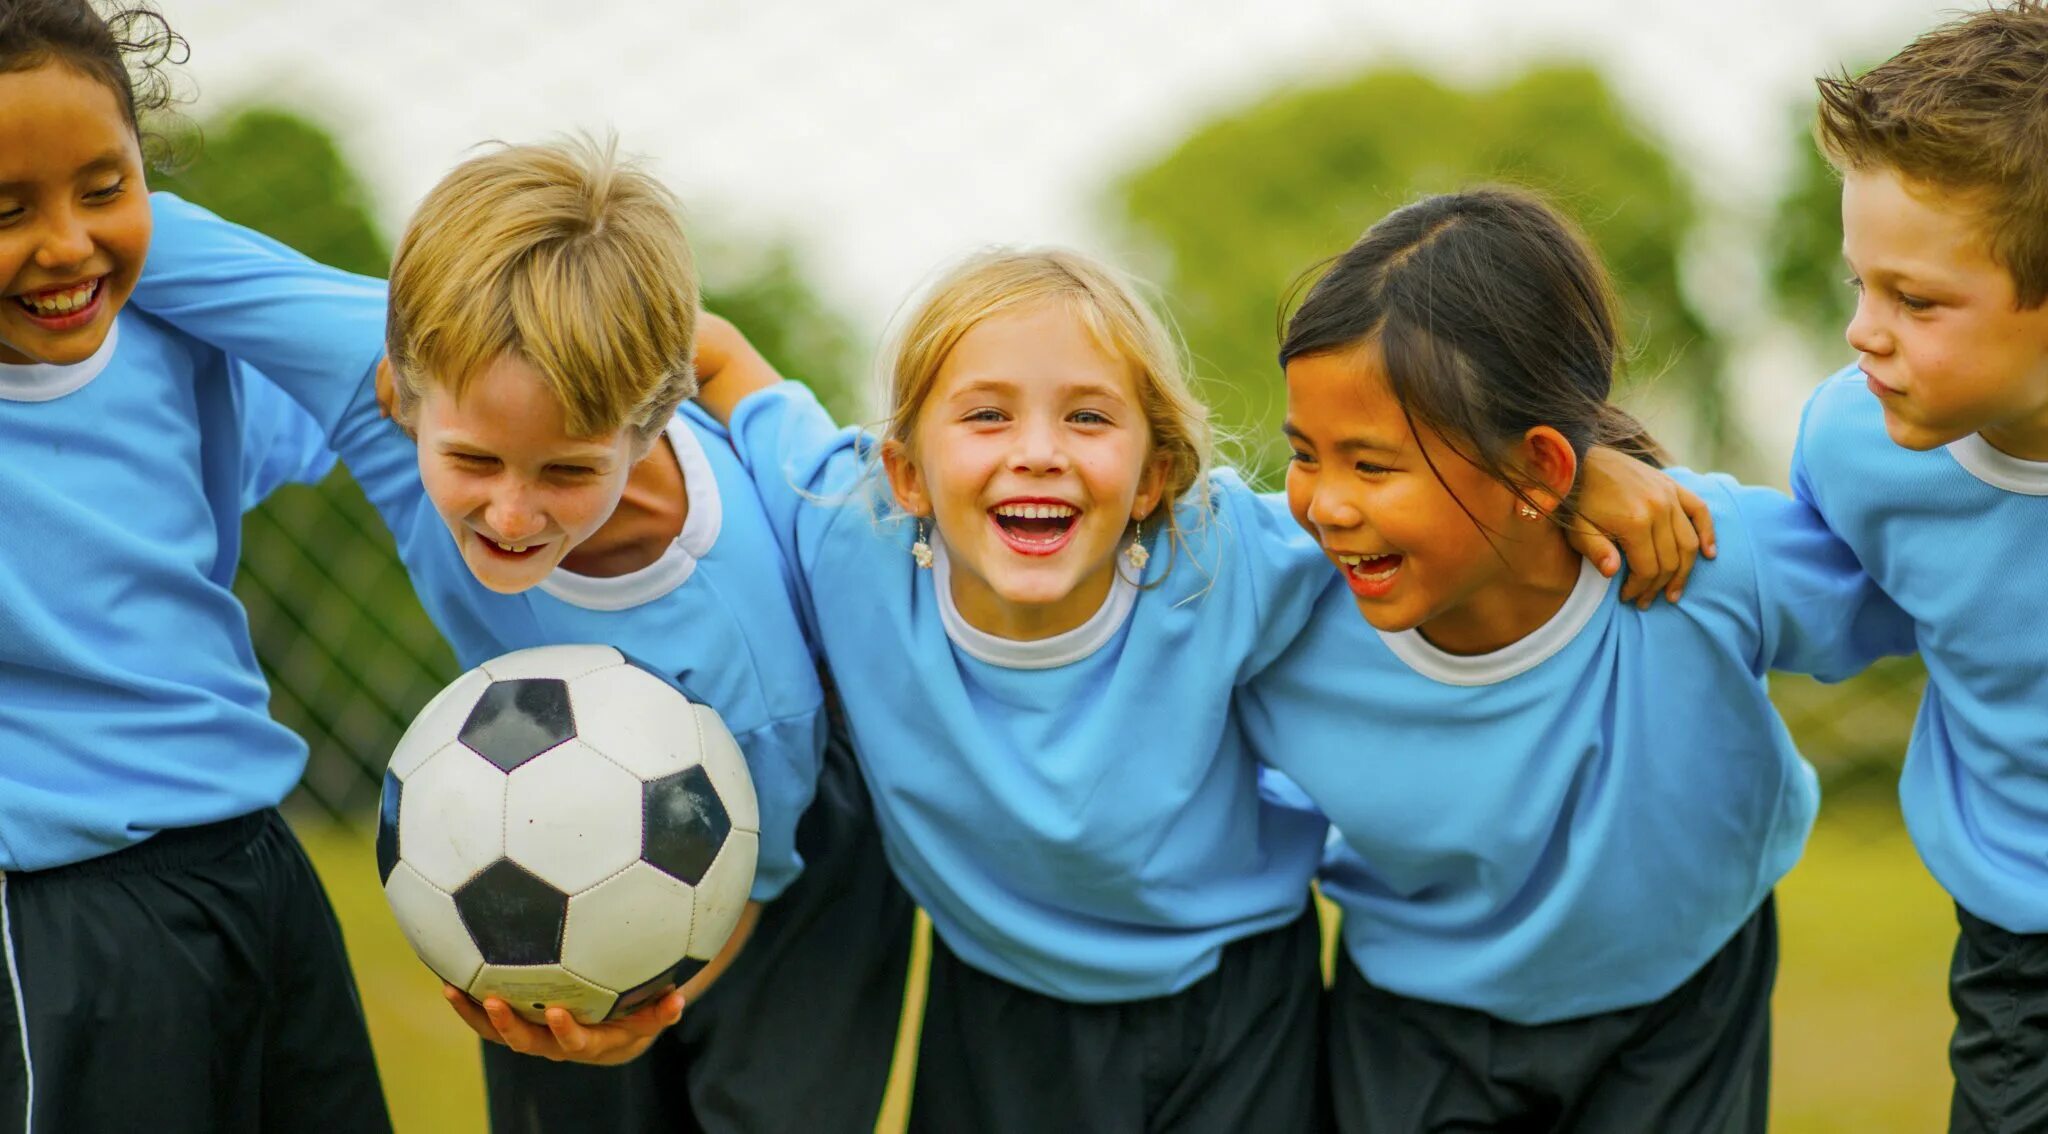 Training school. Дети спортсмены. Детский спорт. Футбол дети. Счастливые дети спорт.